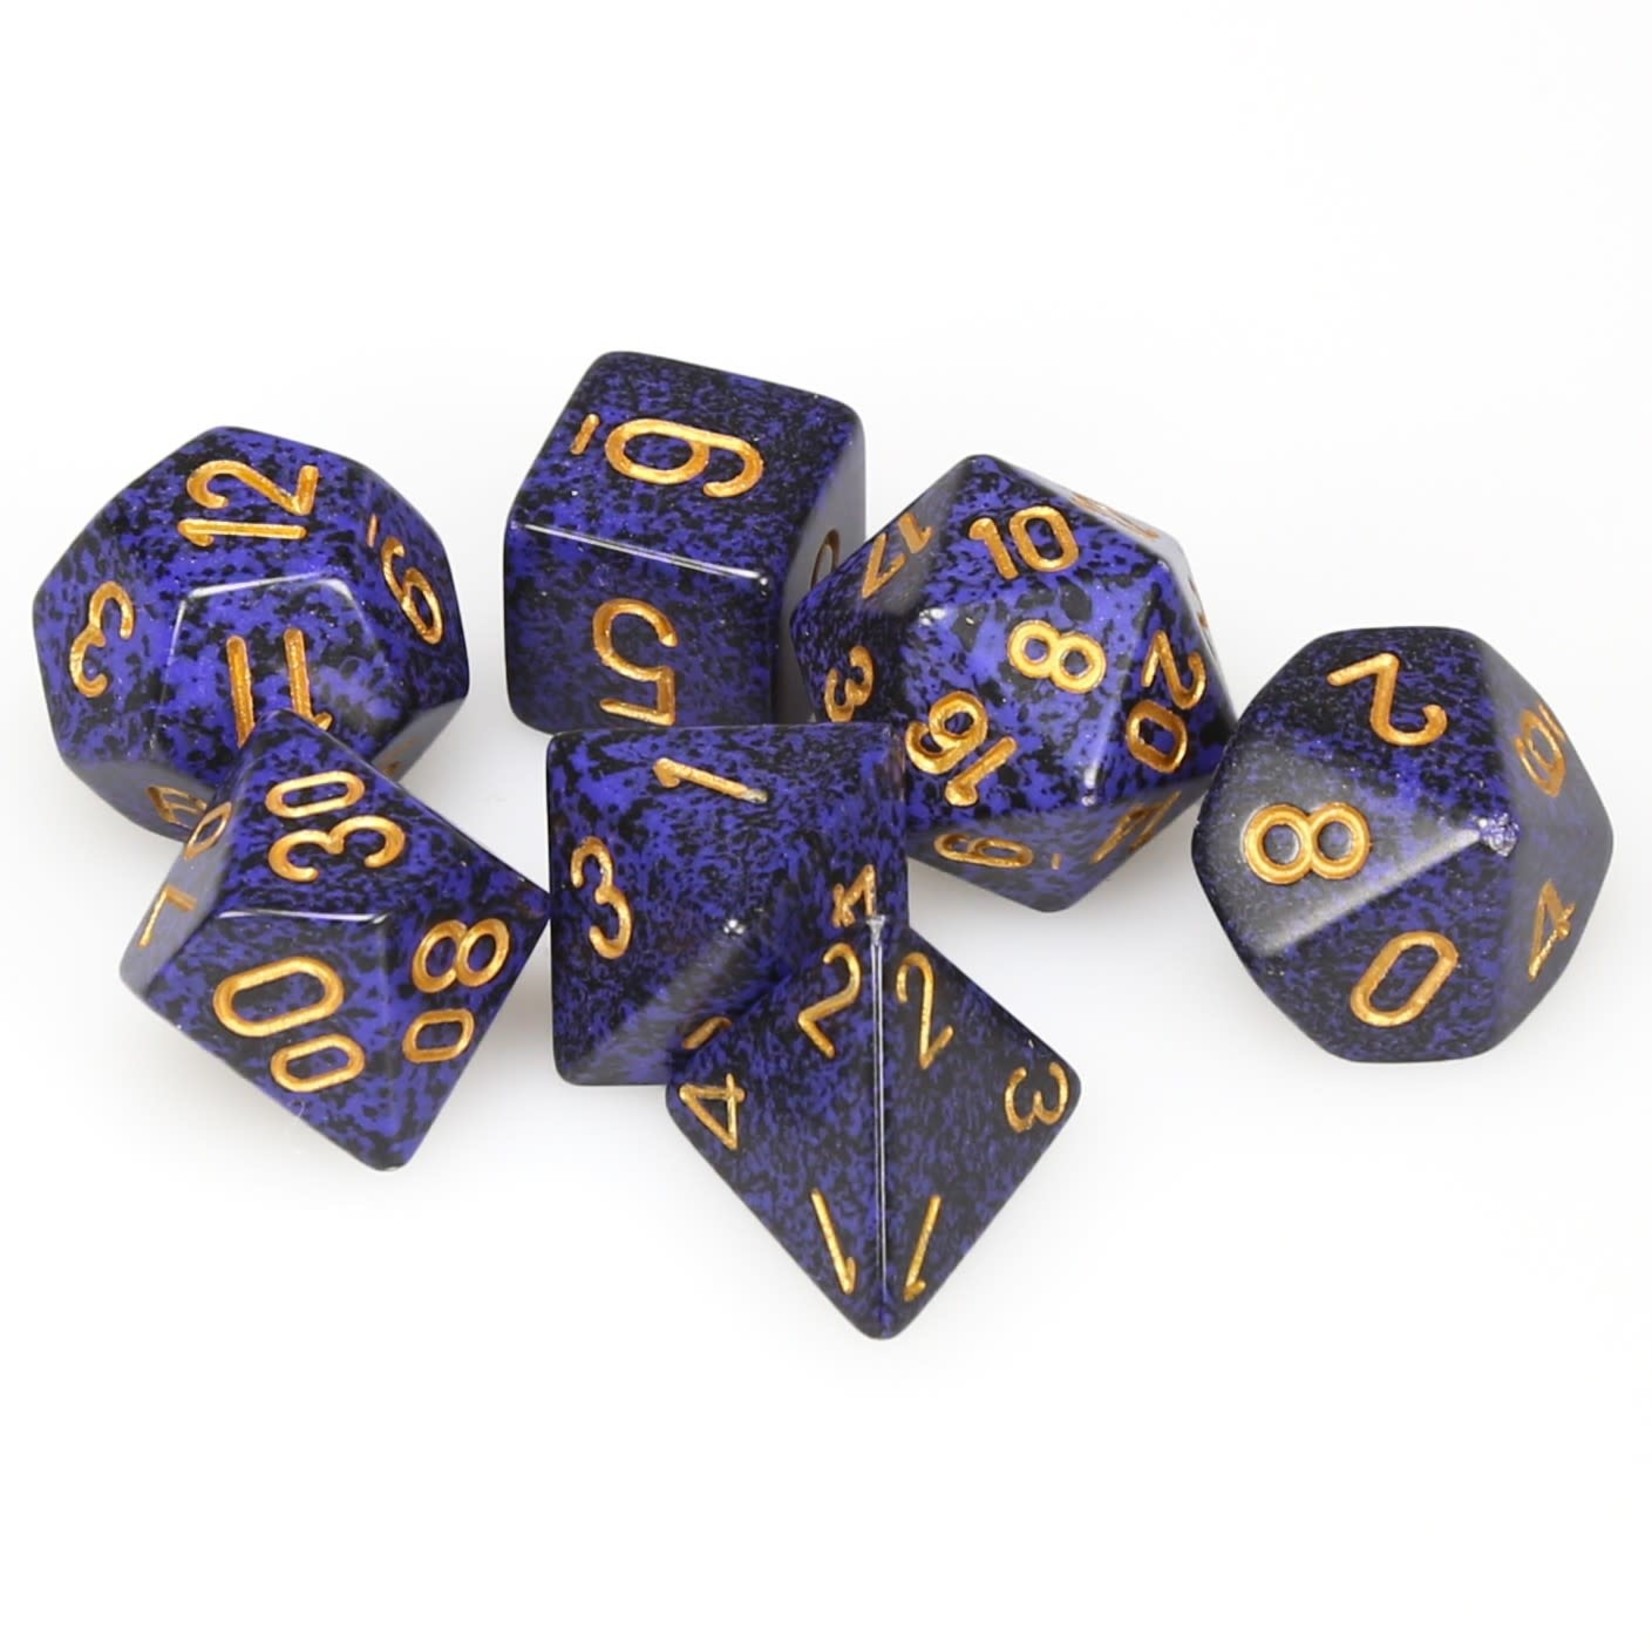 Chessex Speckled Polyhedral 7-Die Set: Golden Cobalt